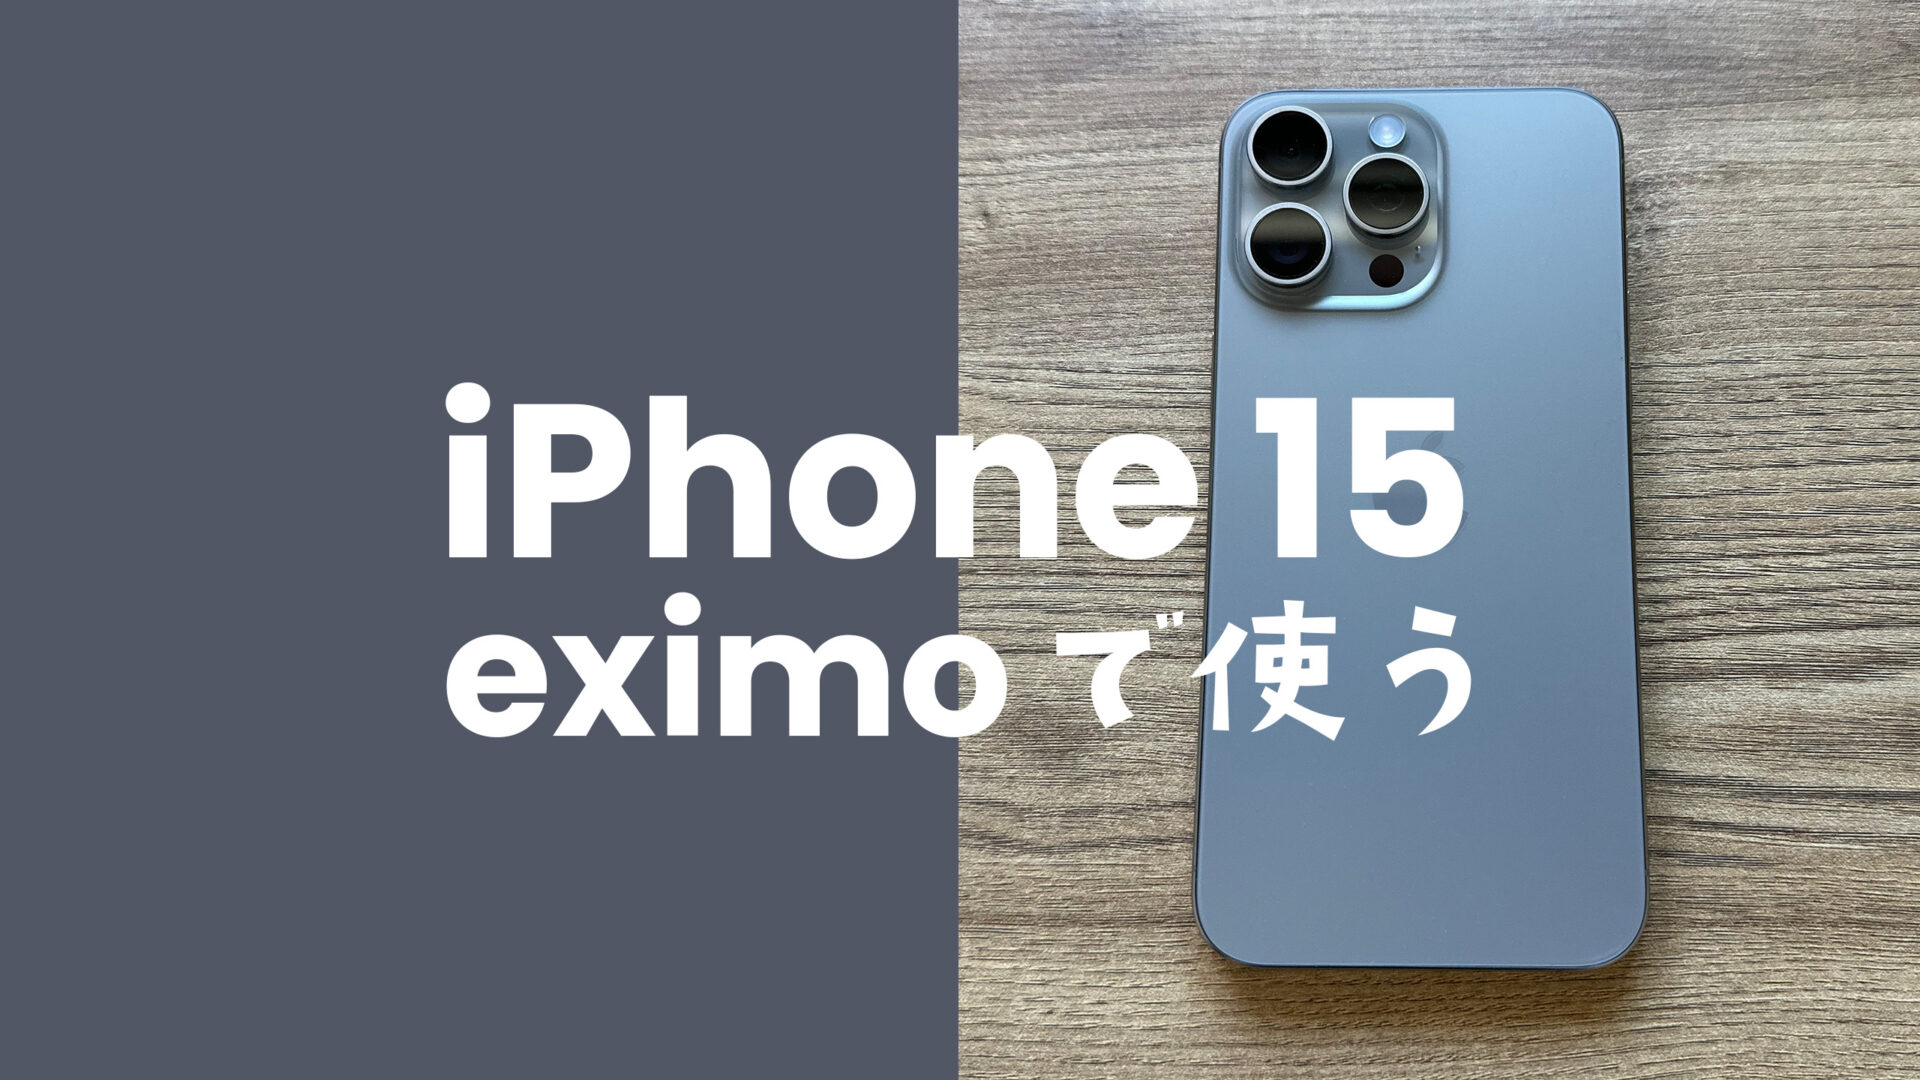 eximo(エクシモ)でiPhone 15/アイフォン15 Proがセット販売され対応機種に含まれる。のサムネイル画像